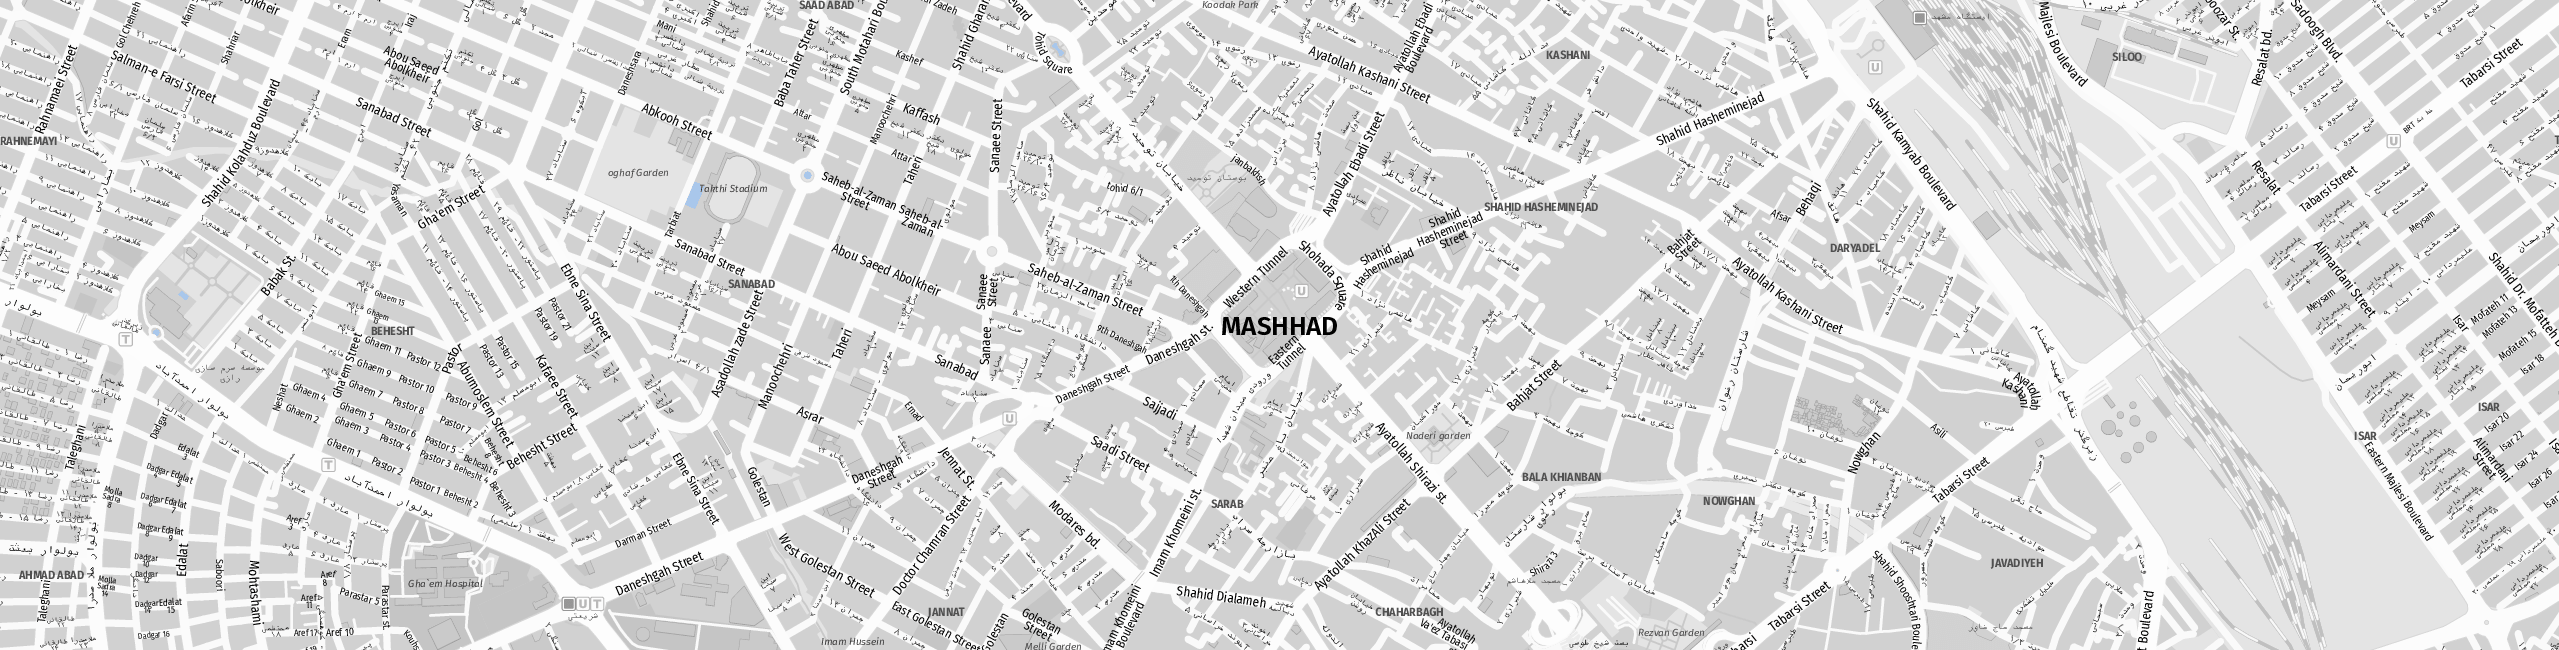 Stadtplan Mashhad zum Downloaden.